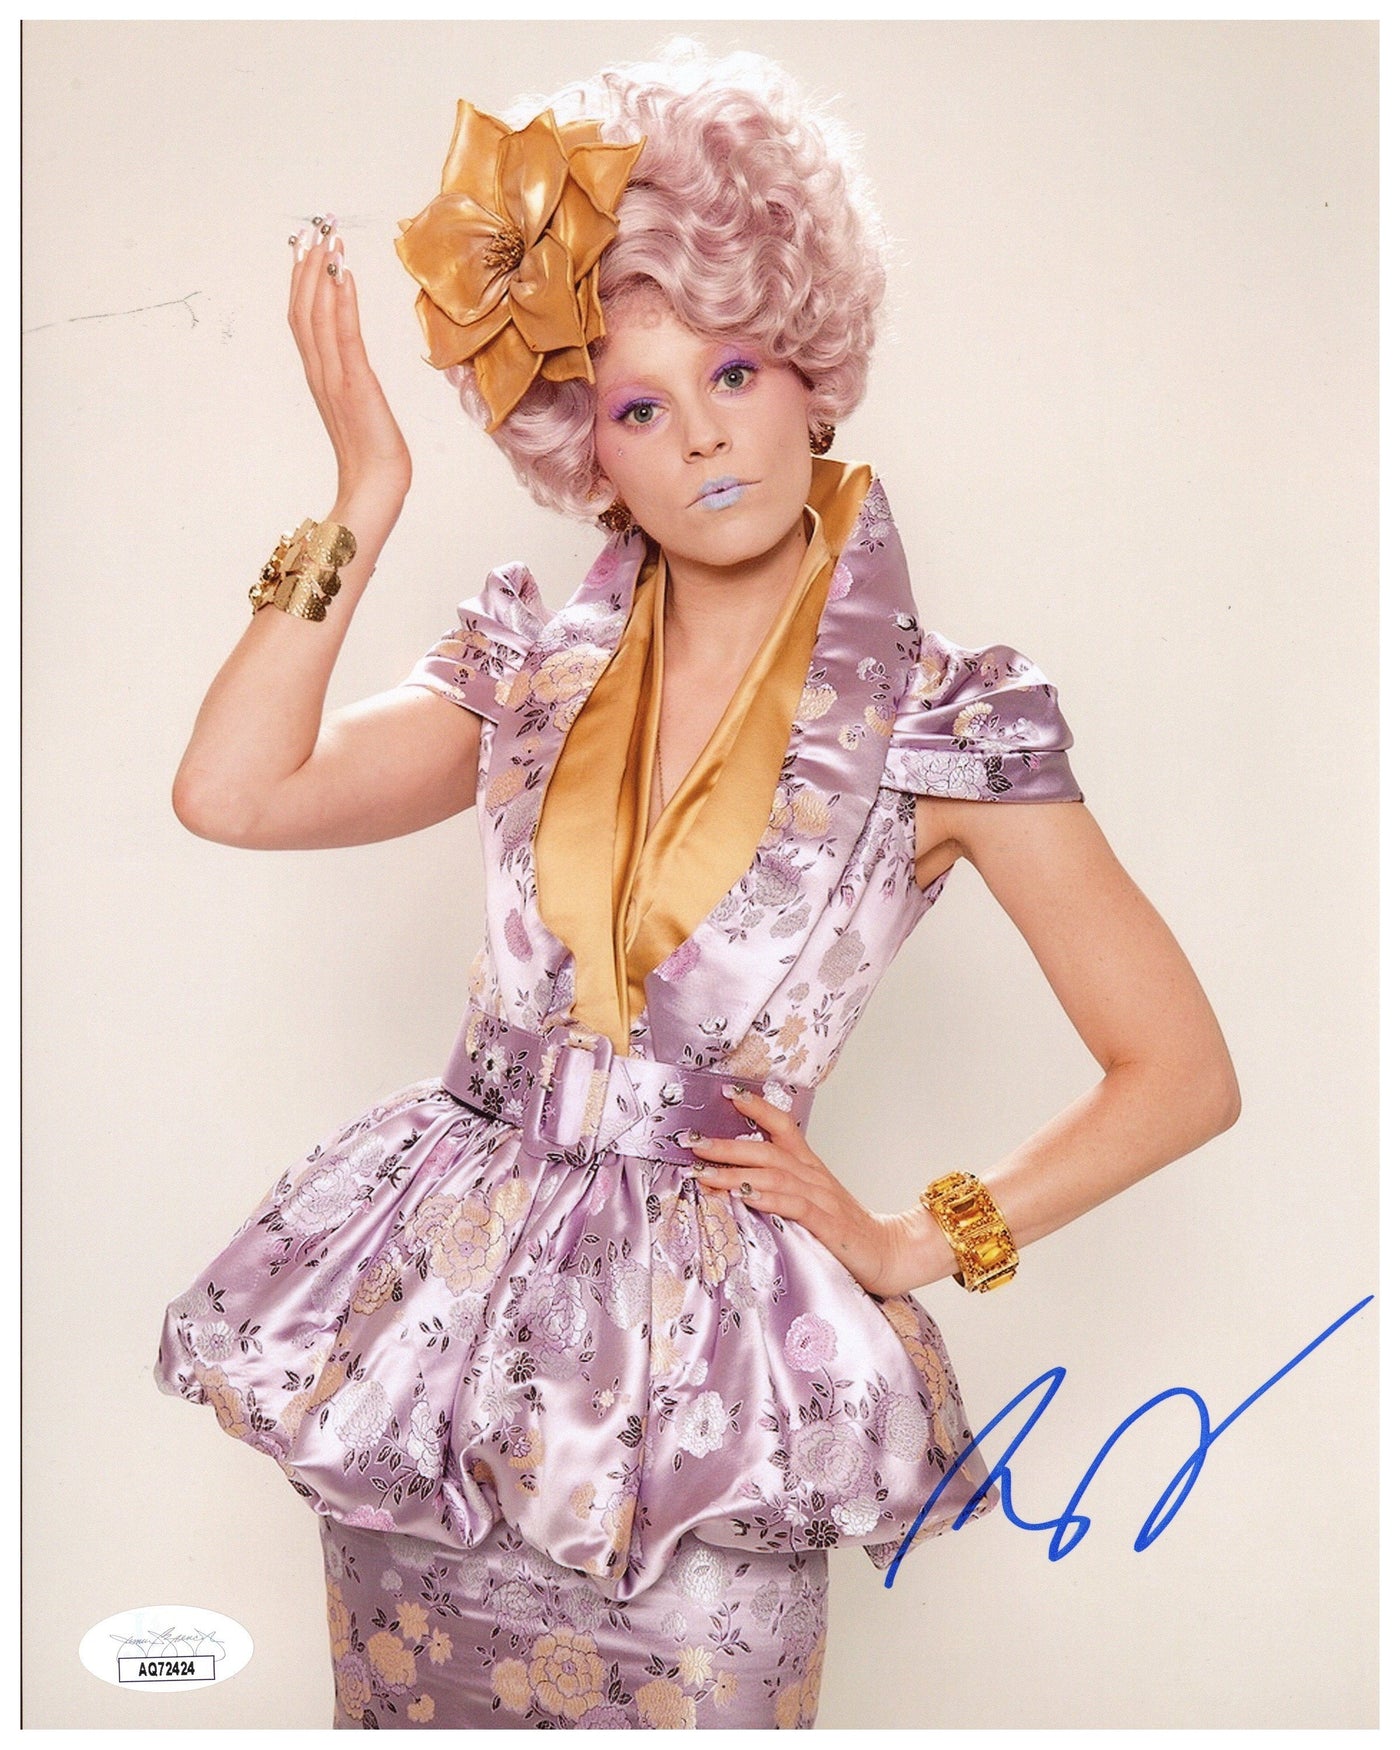 Elizabeth Banks Signed 8x10 Photo The Hunger Games Autographed JSA COA